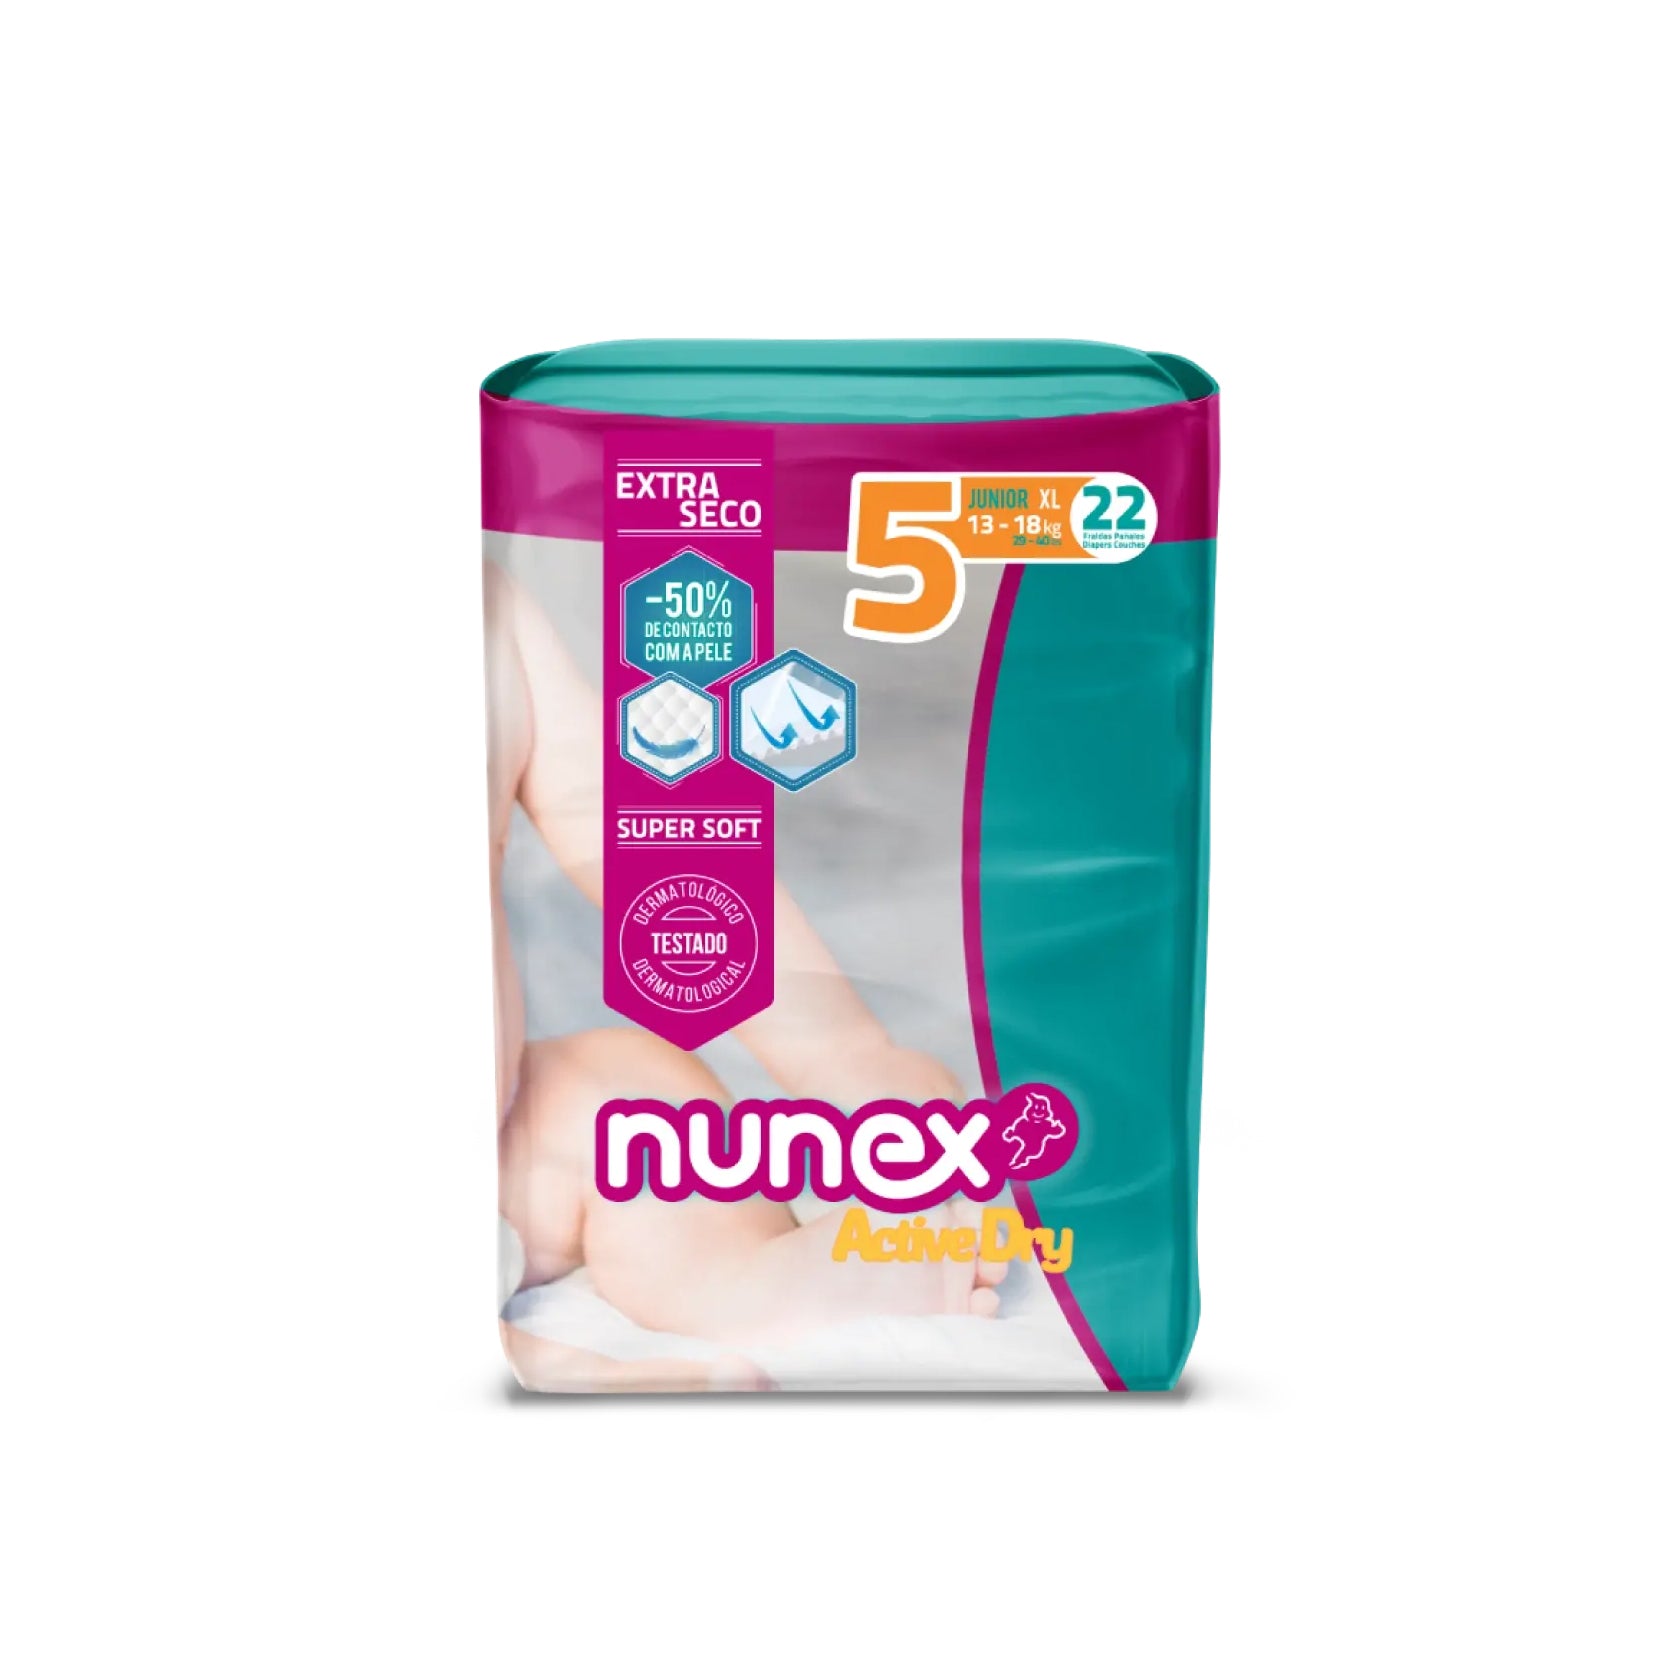 Nunex Fraldas Active Dry T5 13-18 kg 22 un